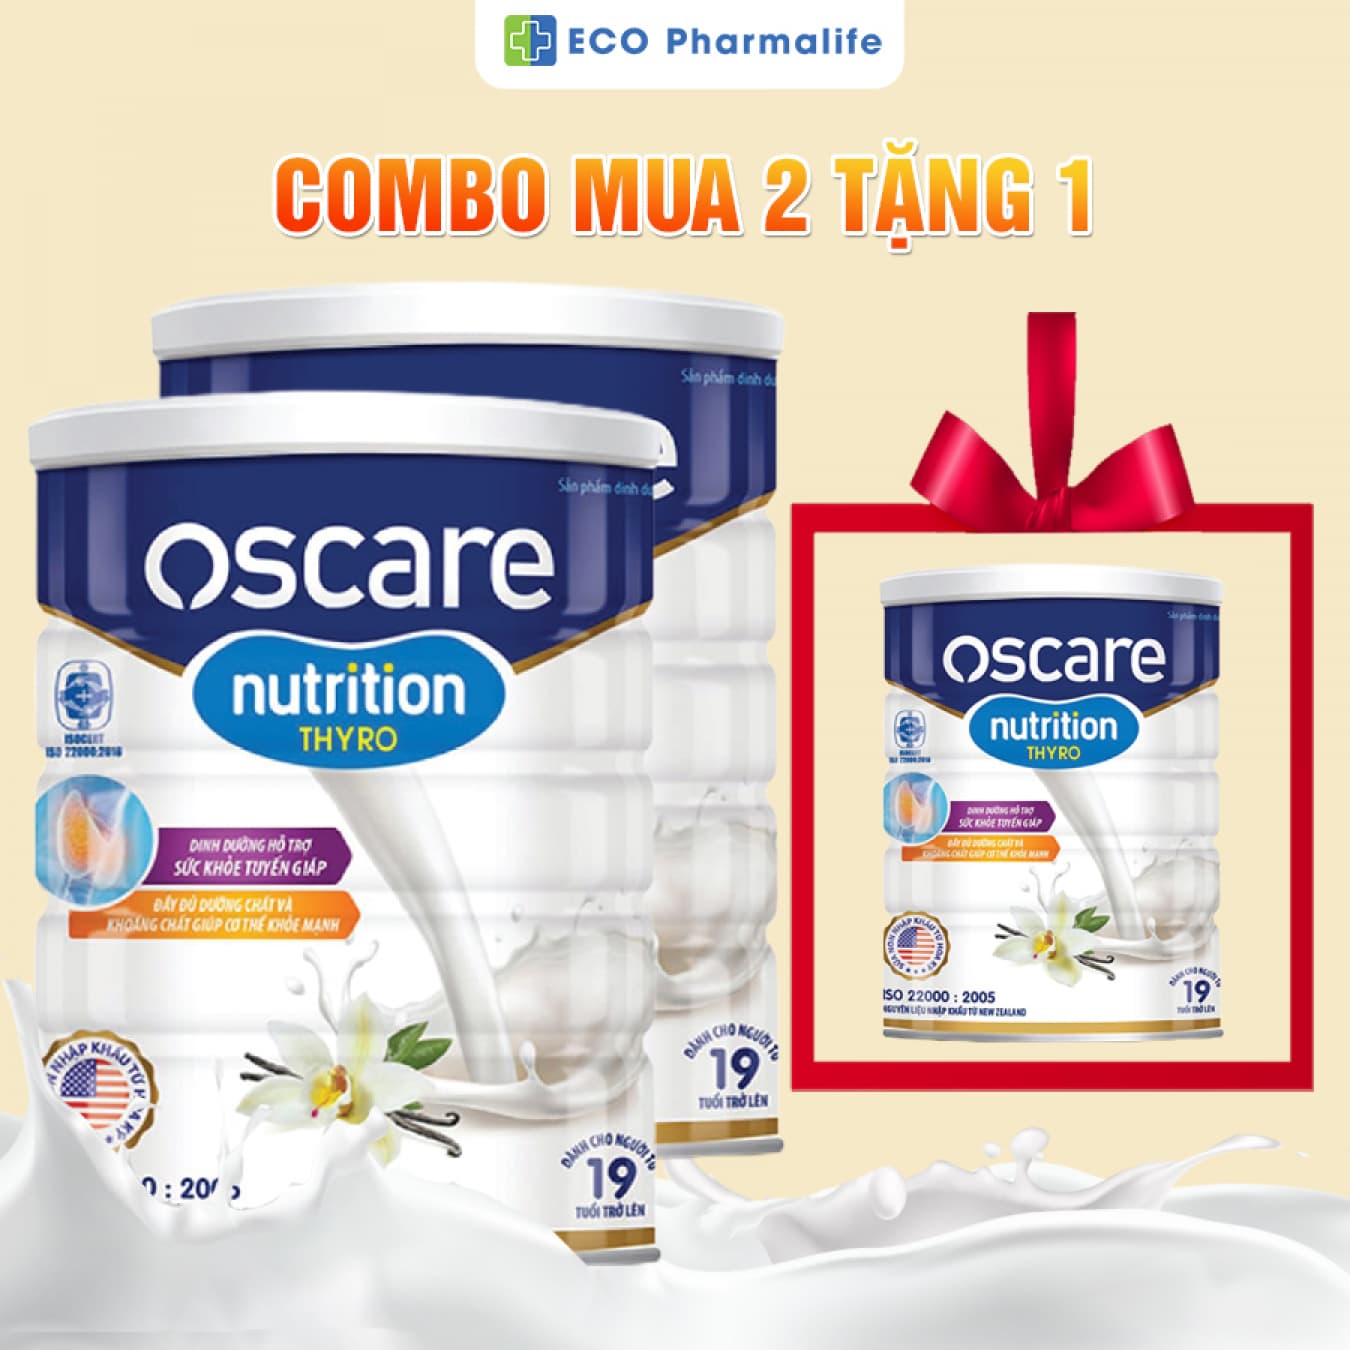 Sữa Oscare Nutrition Thyro